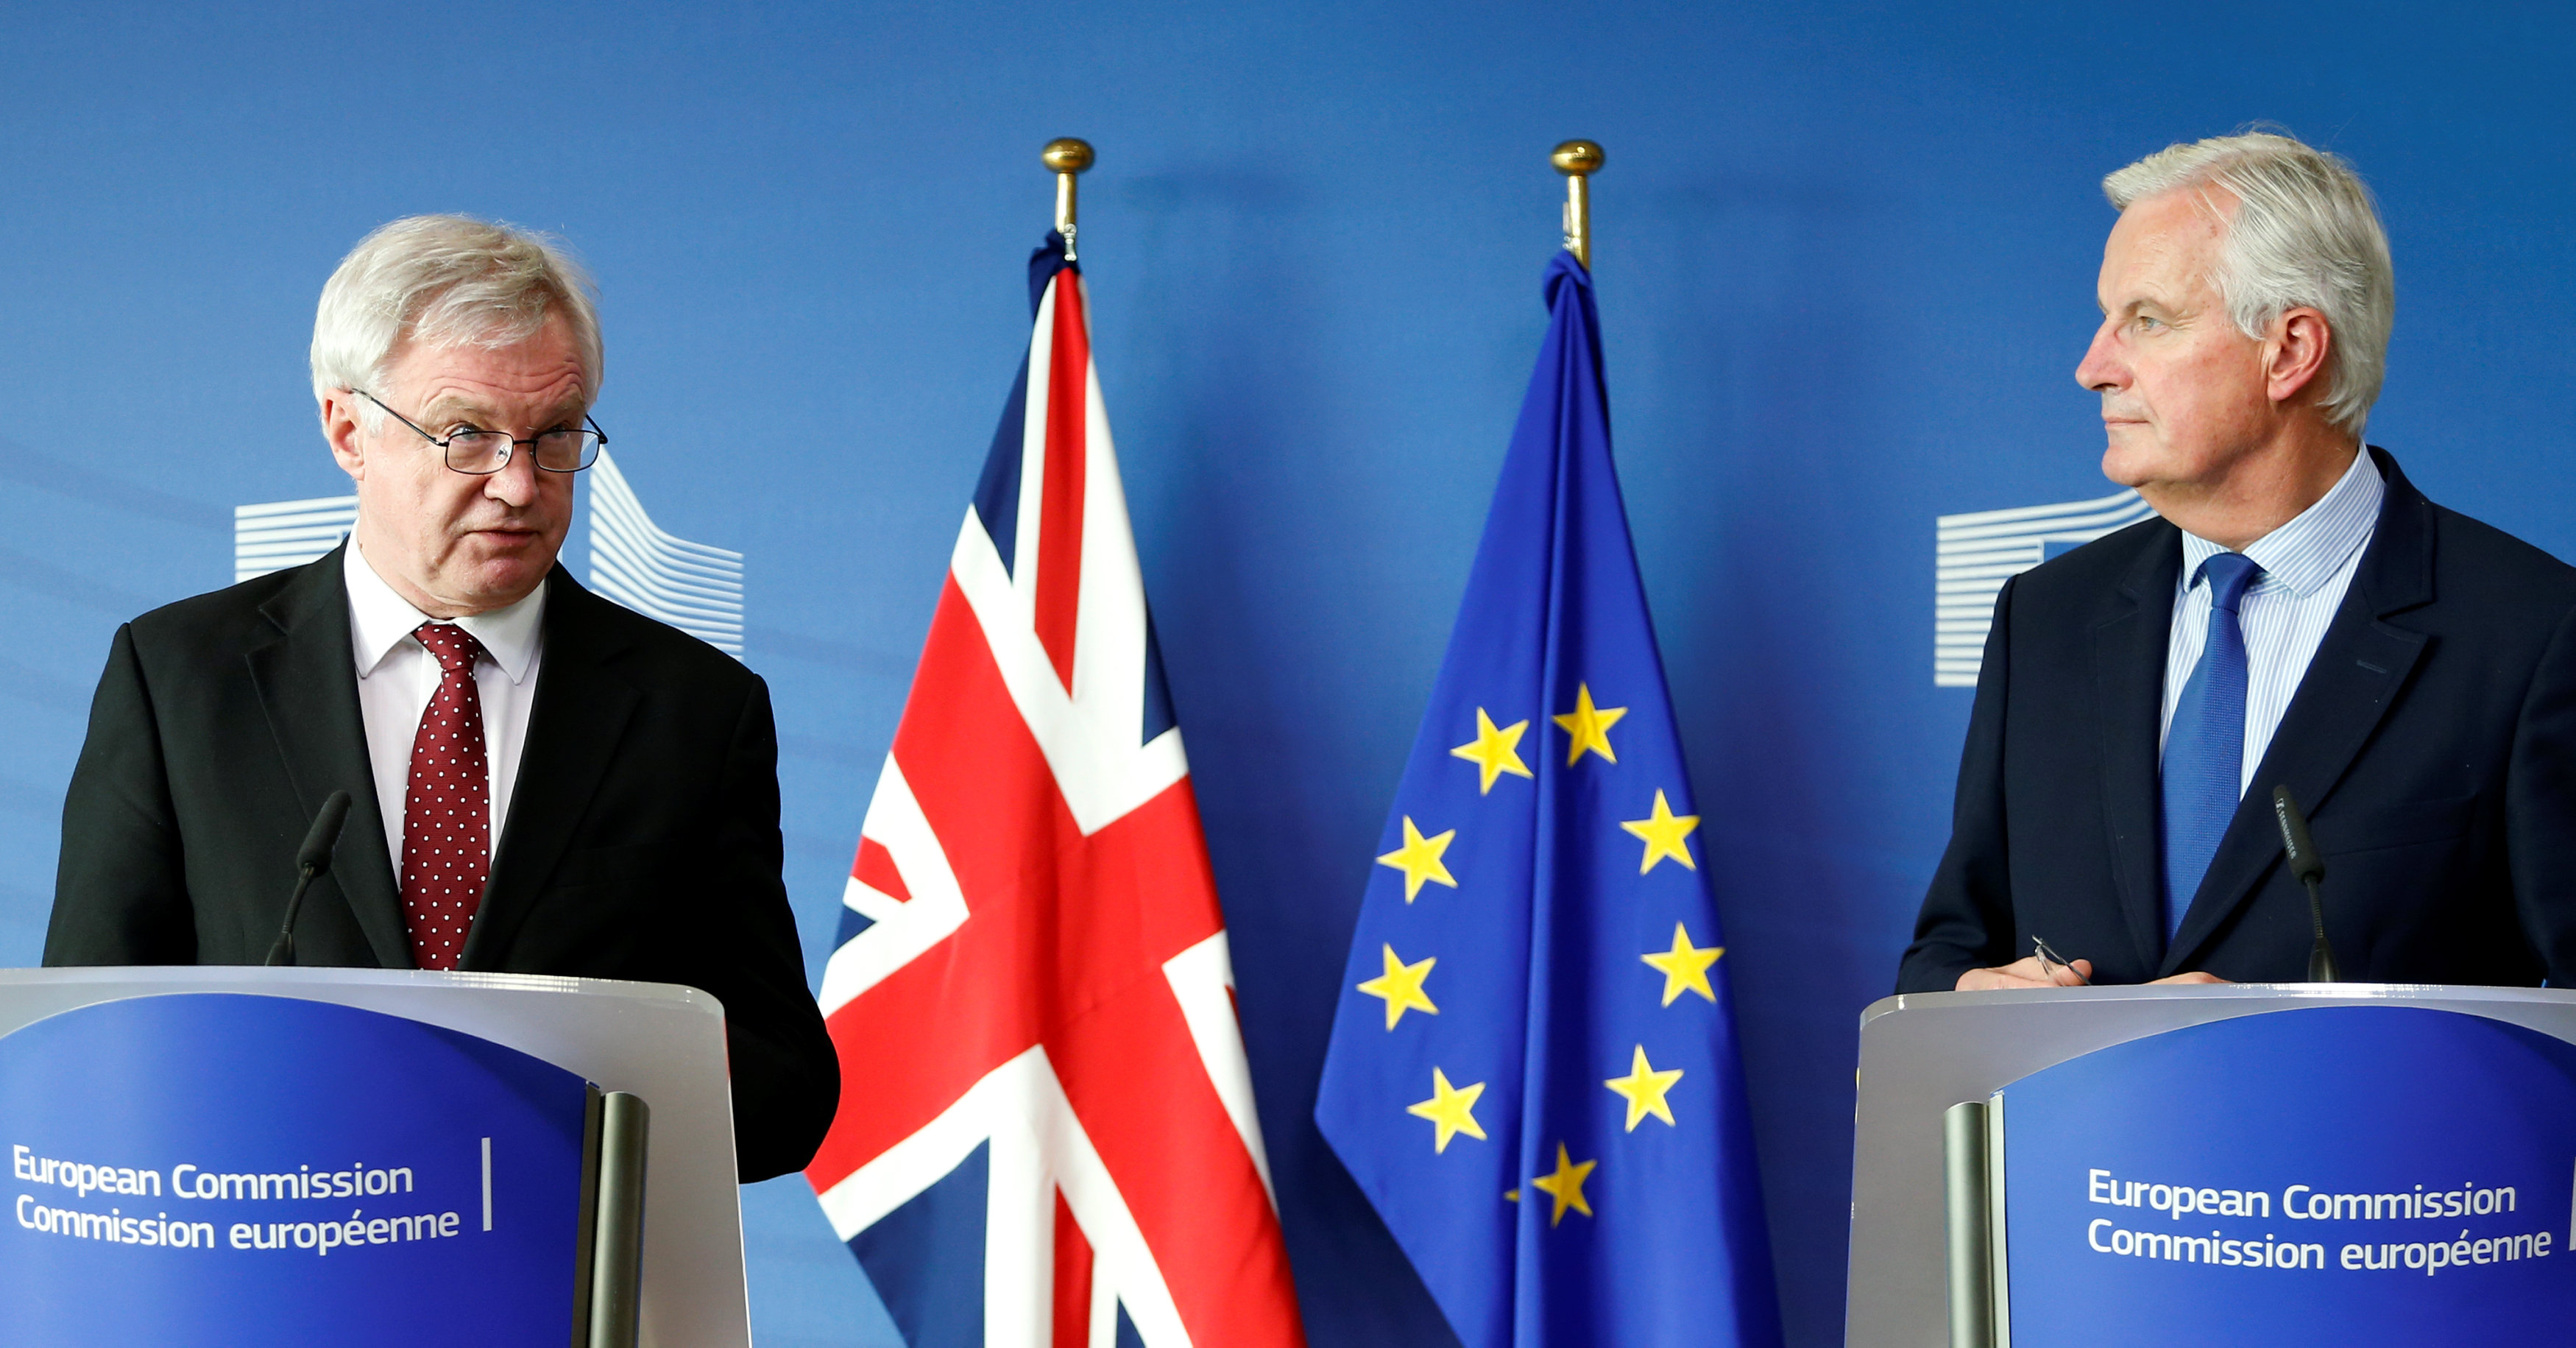 كبير مفاوضى الاتحاد الأوروبي فى ملف بريكست ميشال  بارنييه مع المفاوض البريطانى